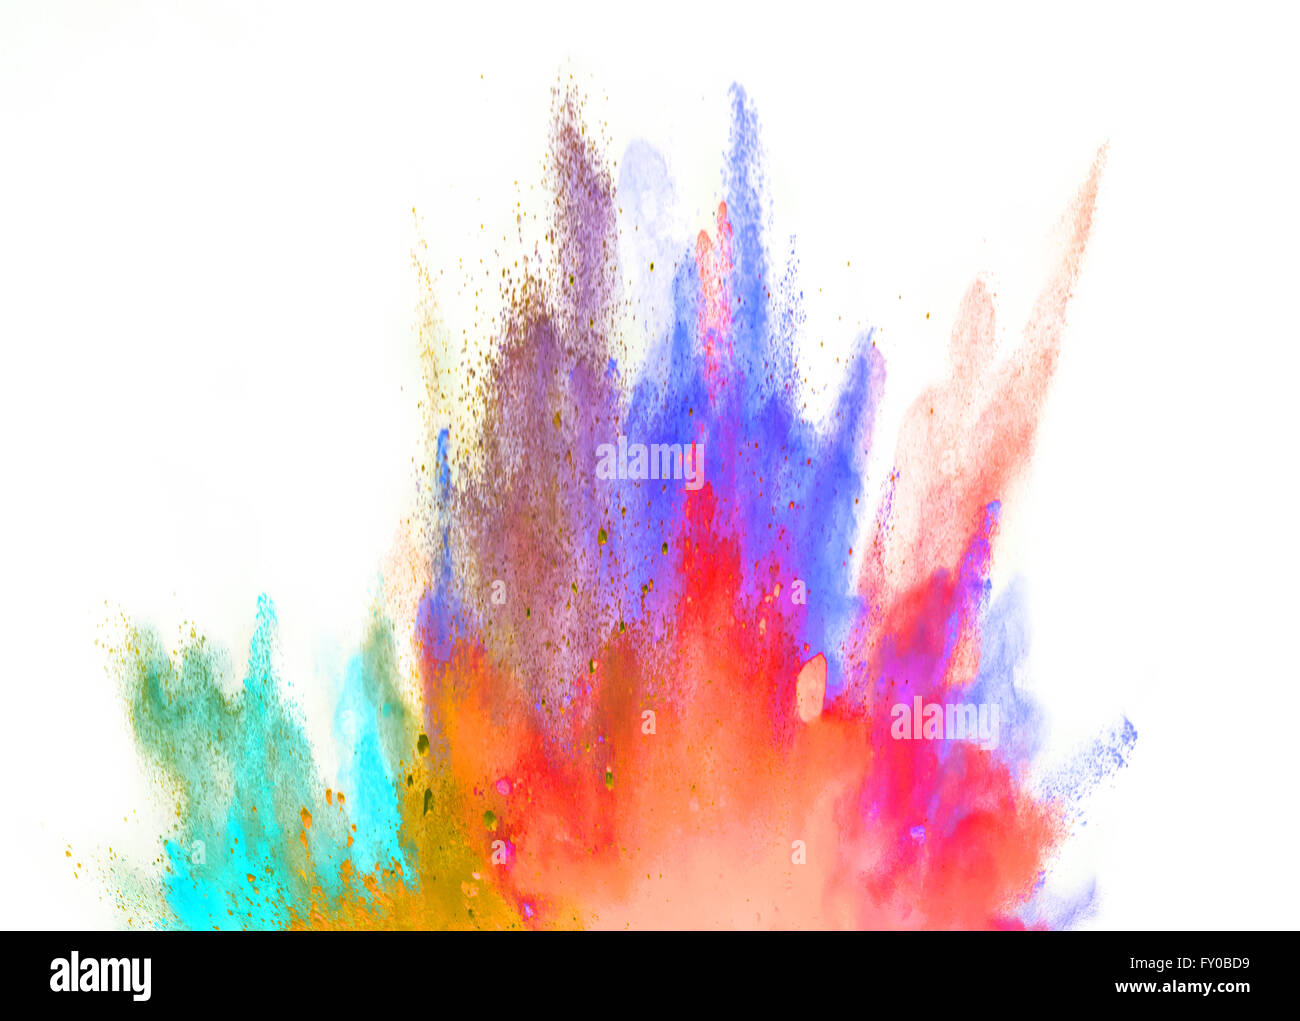 Explosion de poudre de couleur sur fond blanc Banque D'Images